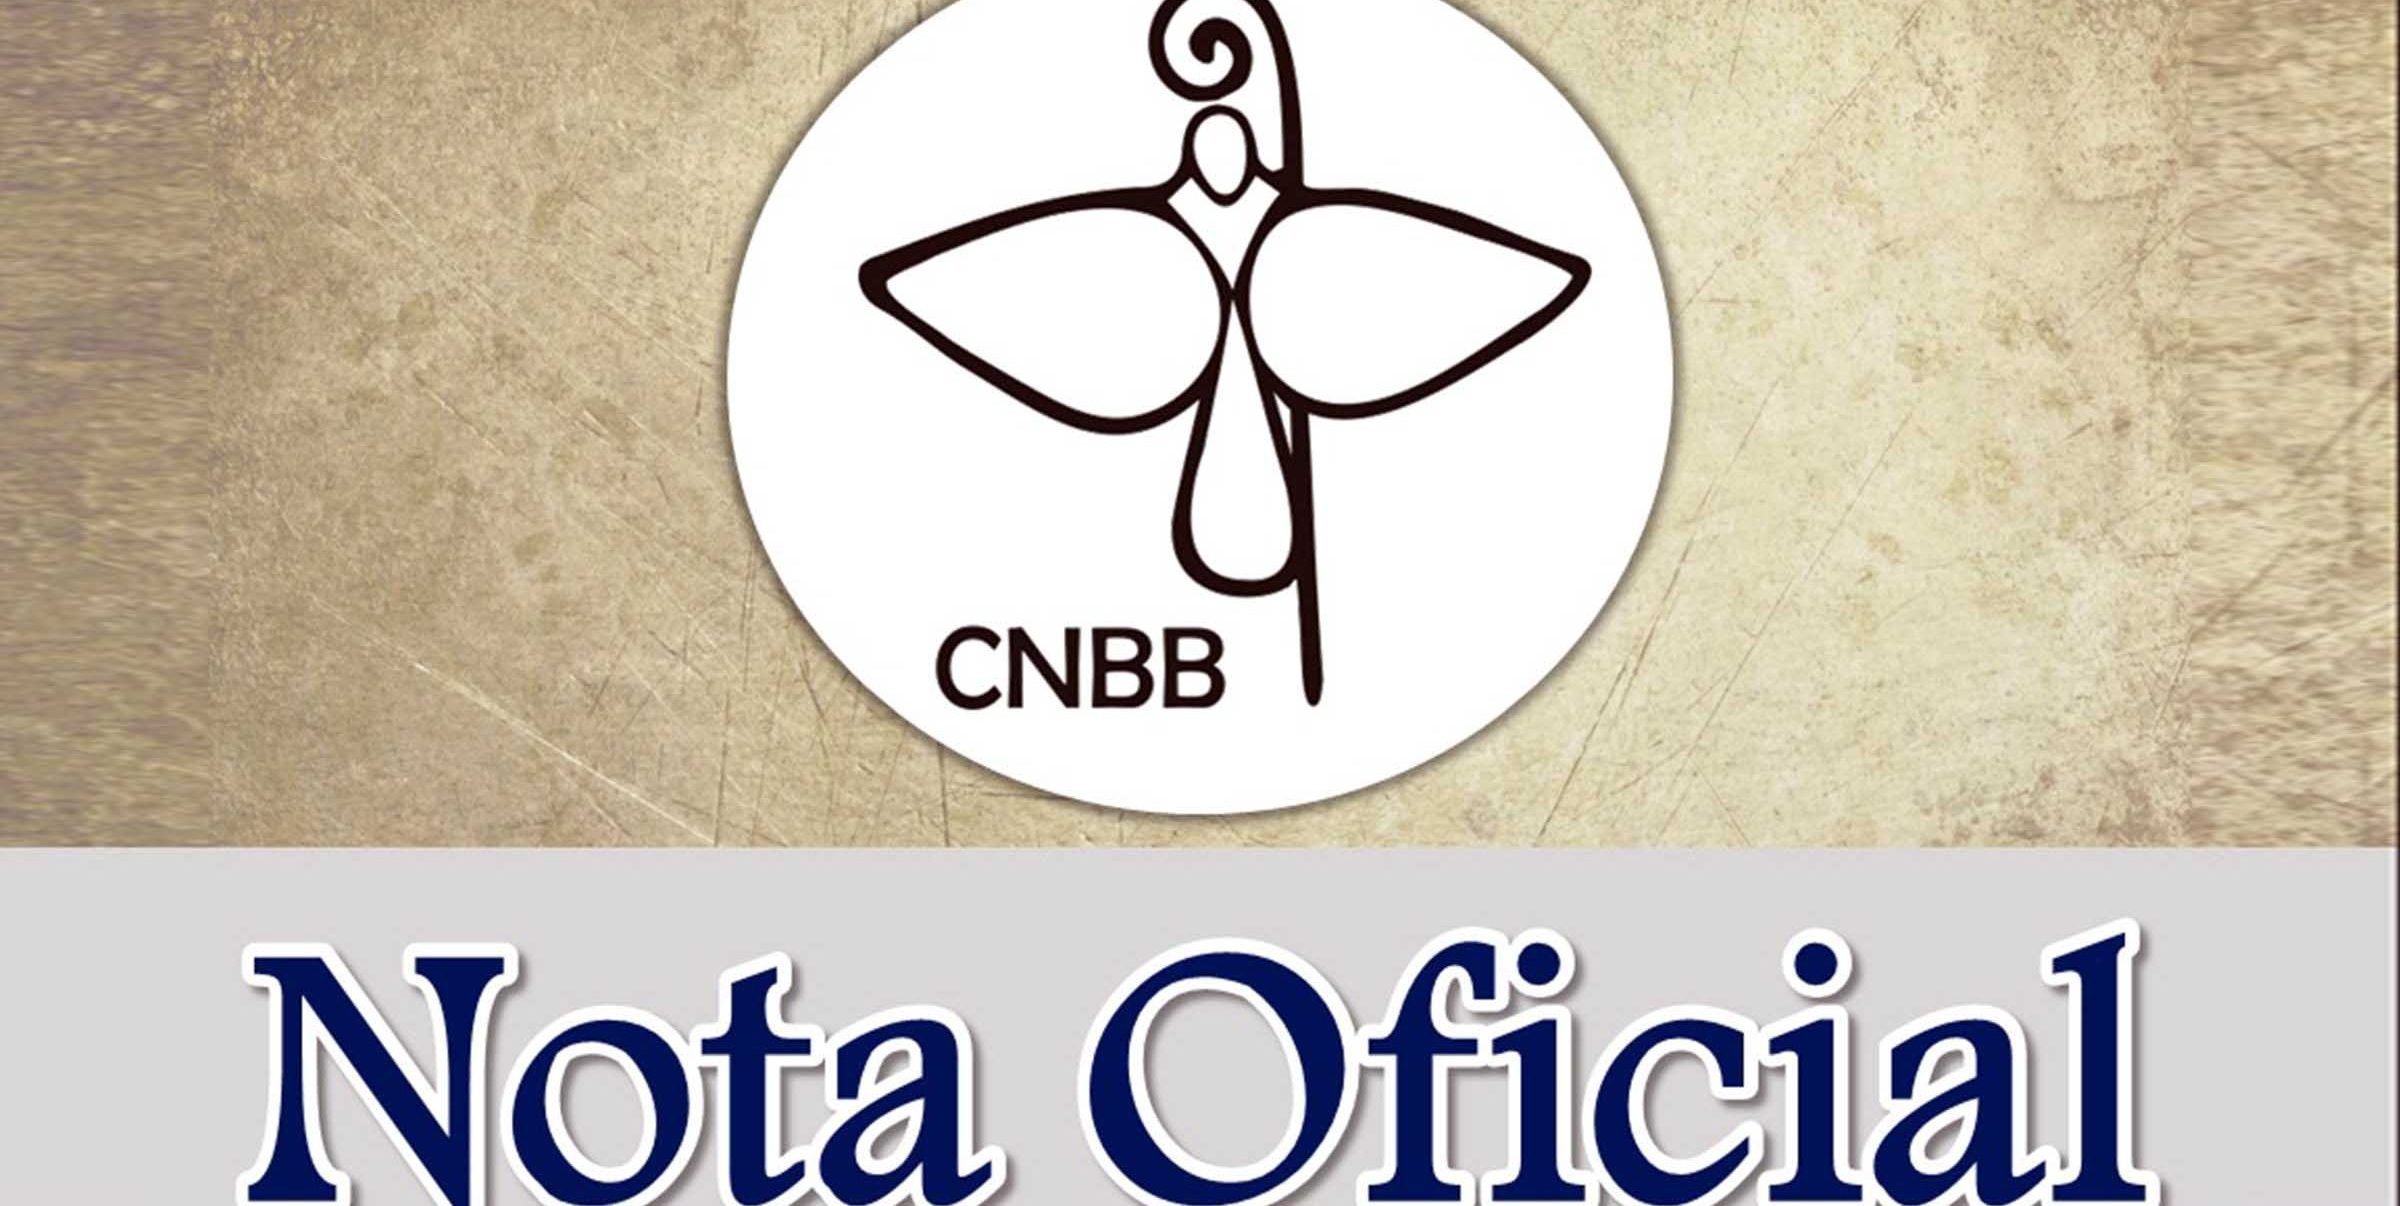 Presidência da CNBB emite nota: “Pela Ética na Política”